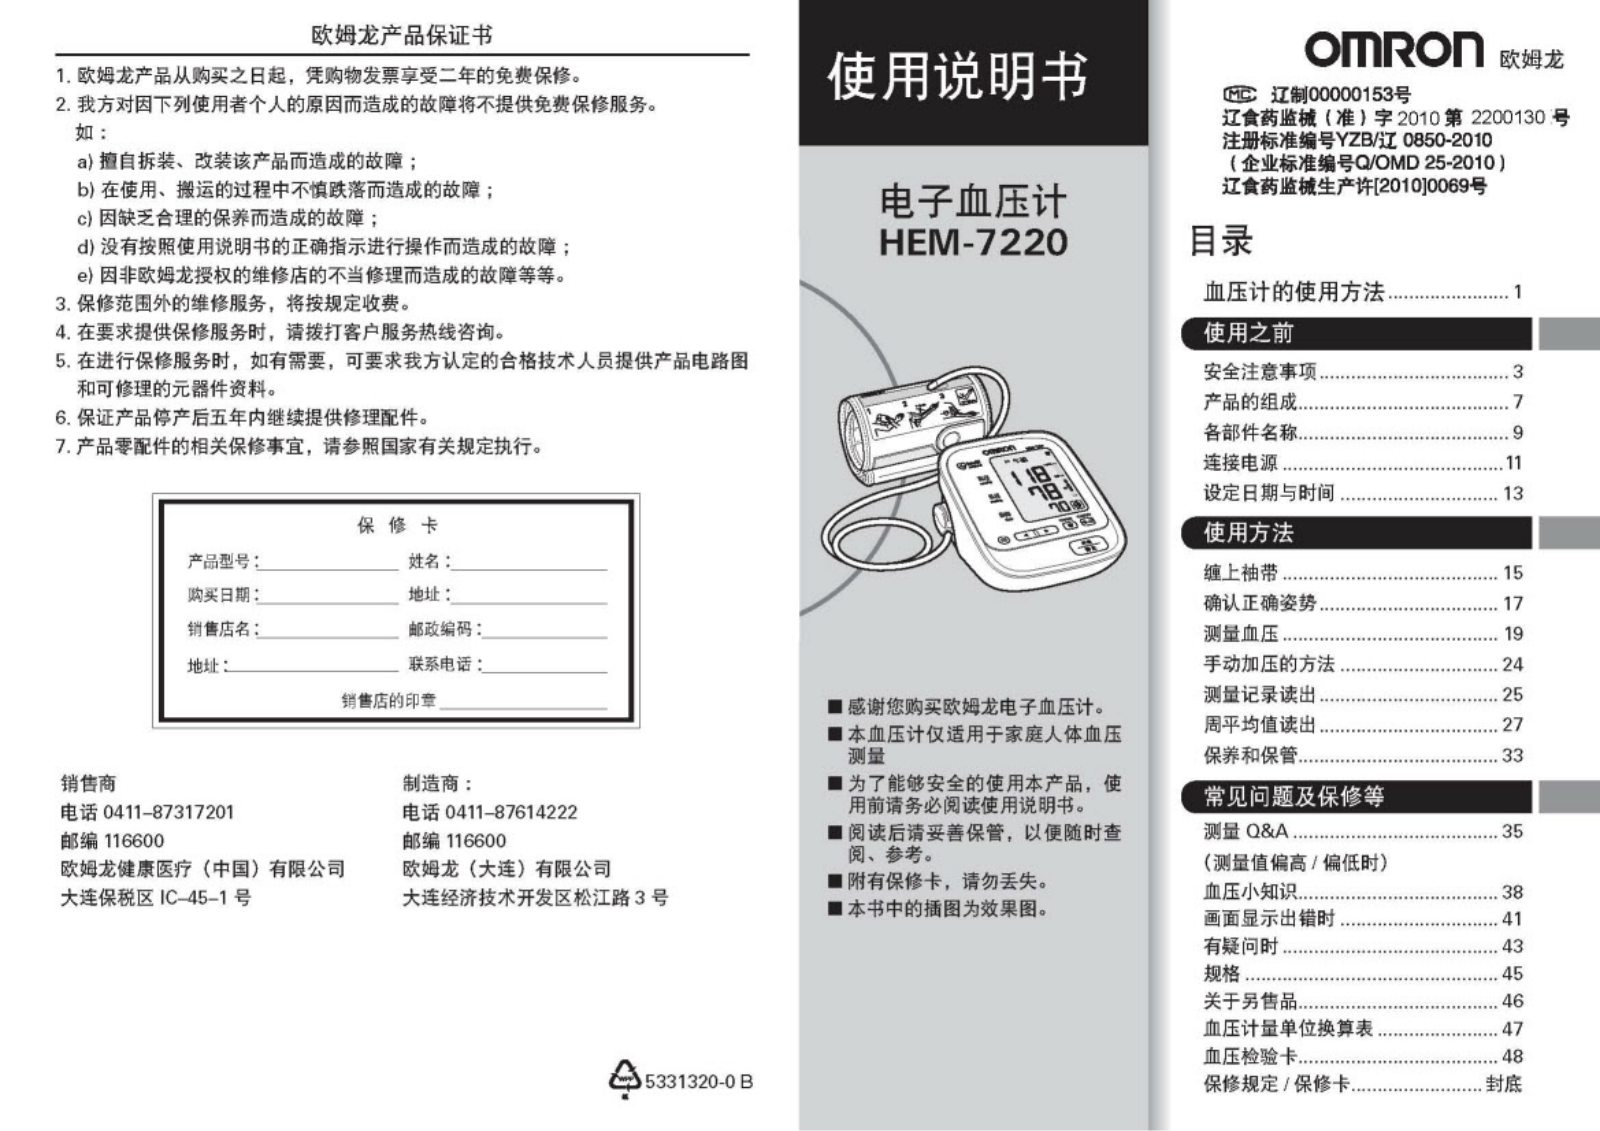 OMRON HEM-7220 User Manual